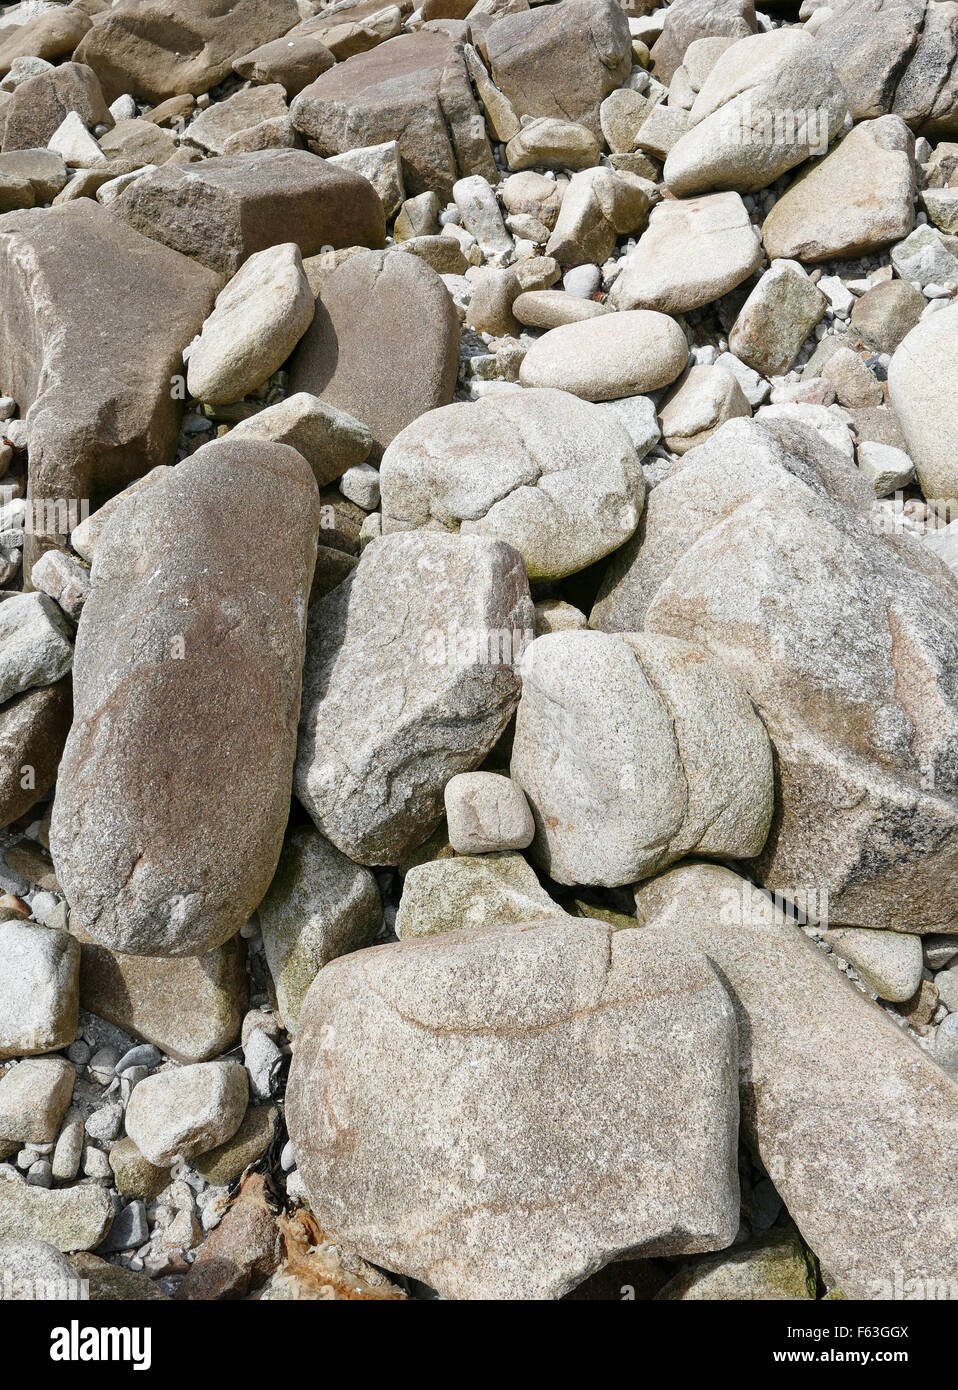 Grandi massi di granito e rocce vicino a una spiaggia a riva. Foto Stock